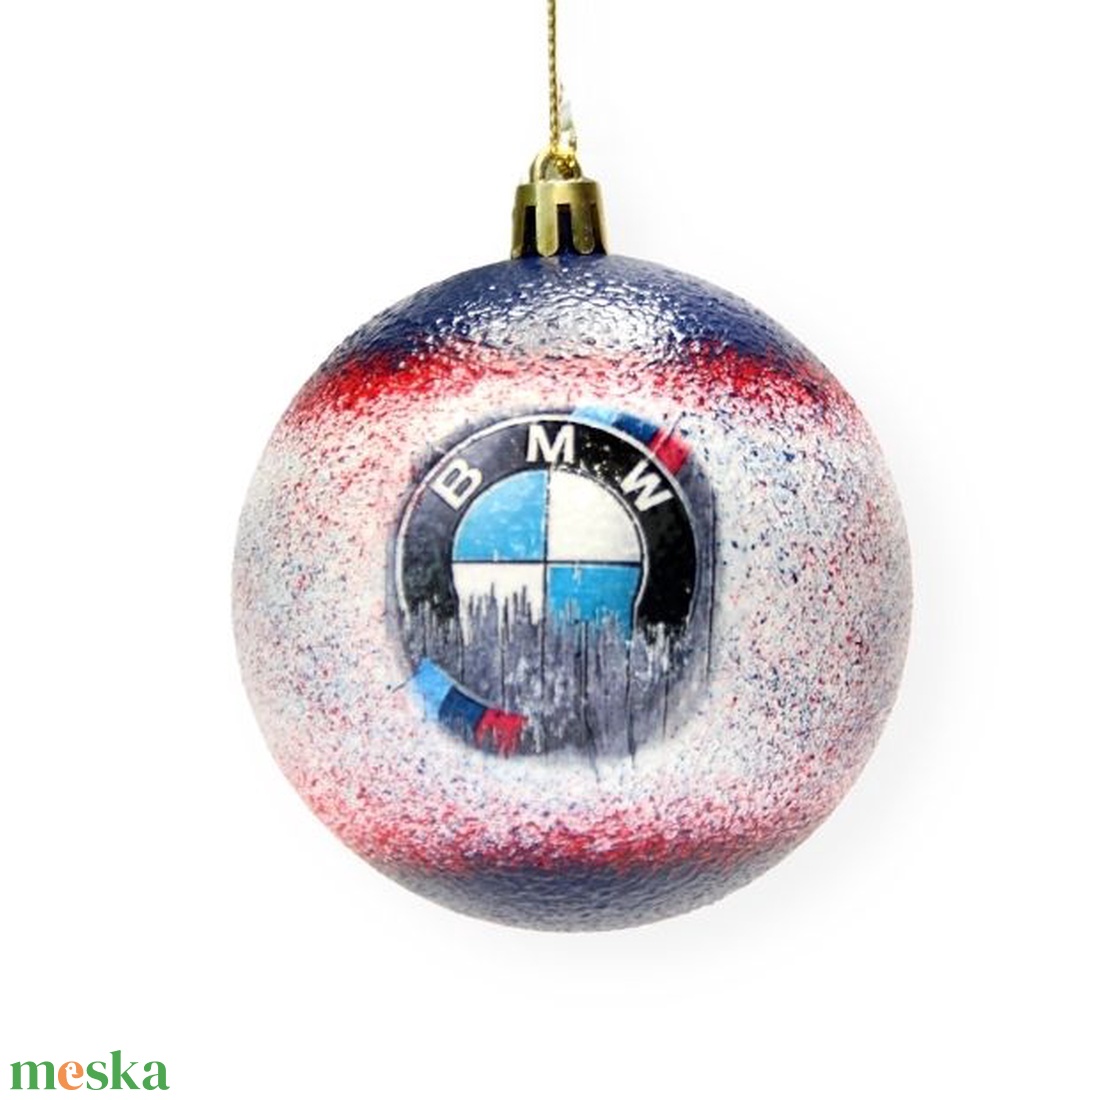 Karácsonyfa gömb autó témájú emblémával - BMW  márka rajongóinak -  párodnak; szerelmednek  mikulásra és karácsonyra  - karácsony - karácsonyi lakásdekoráció - karácsonyfadíszek - Meska.hu